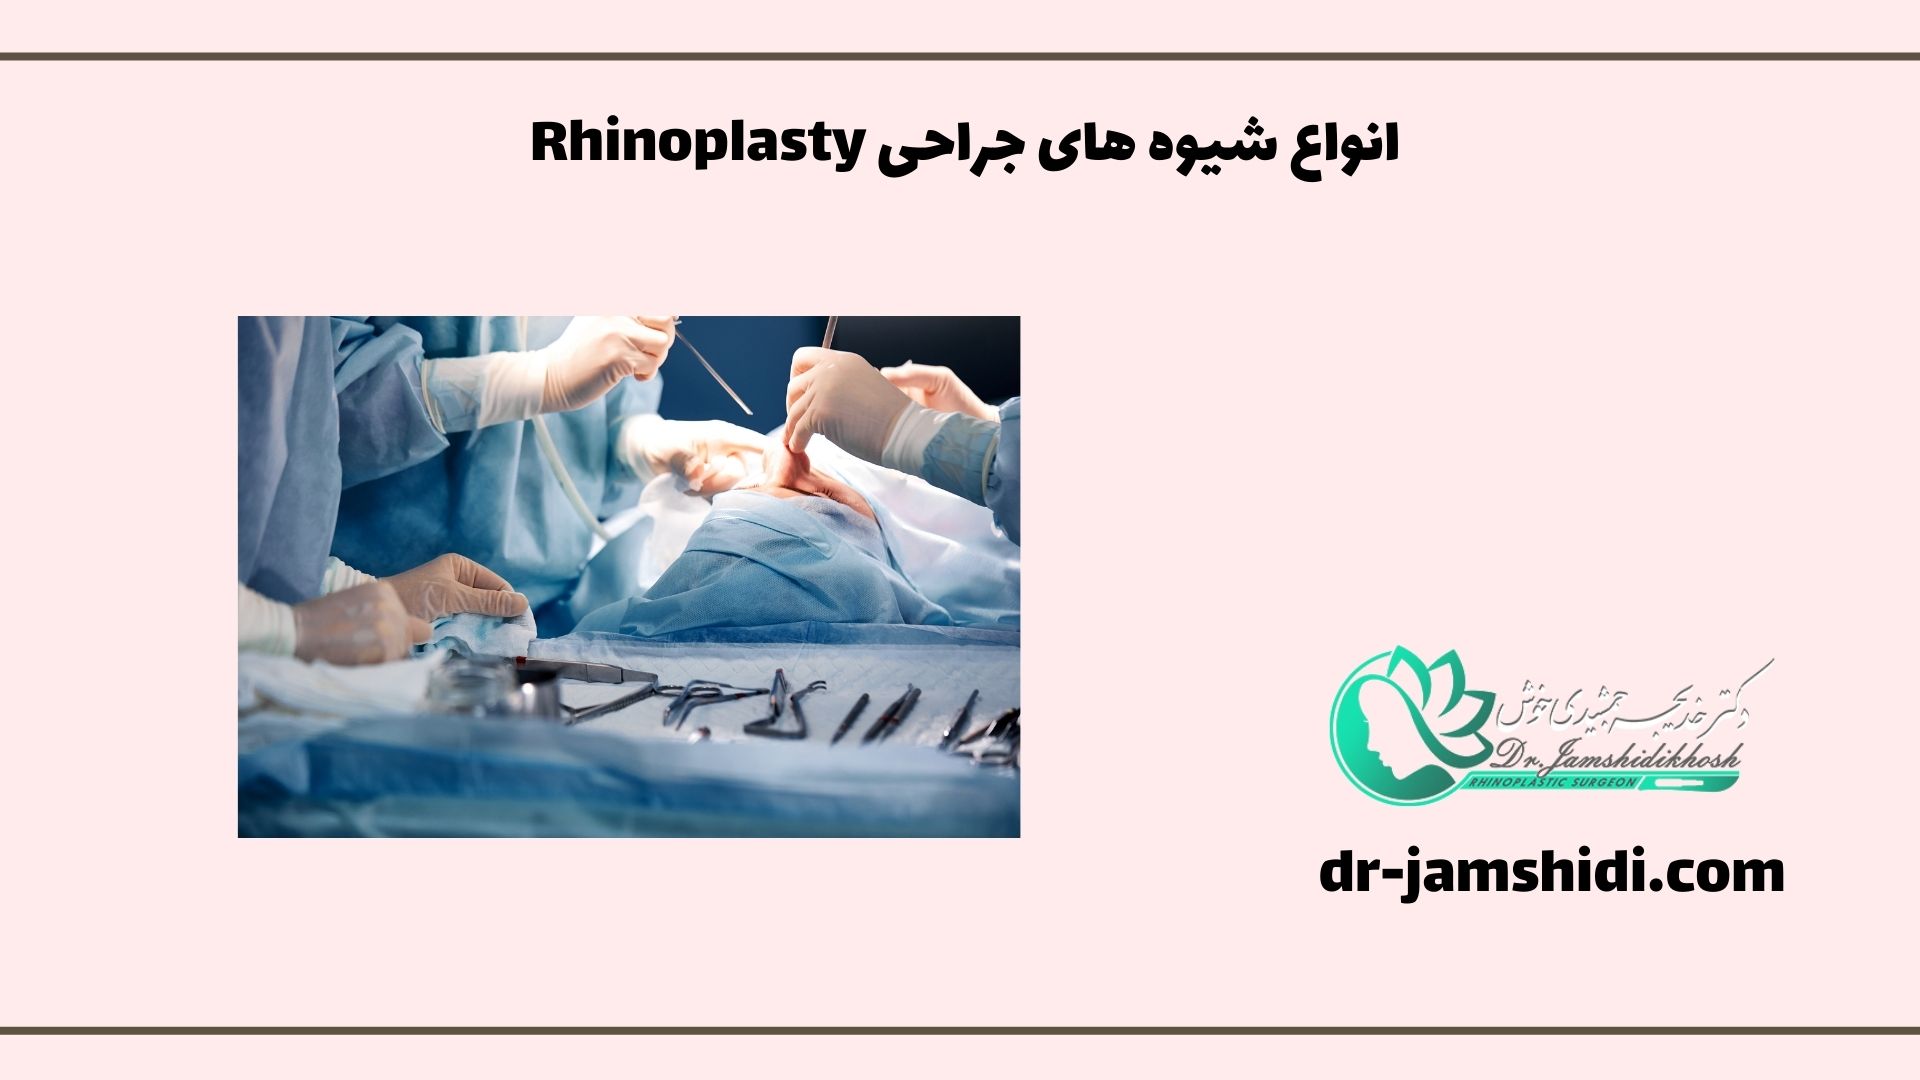 انواع شیوه های جراحی Rhinoplasty